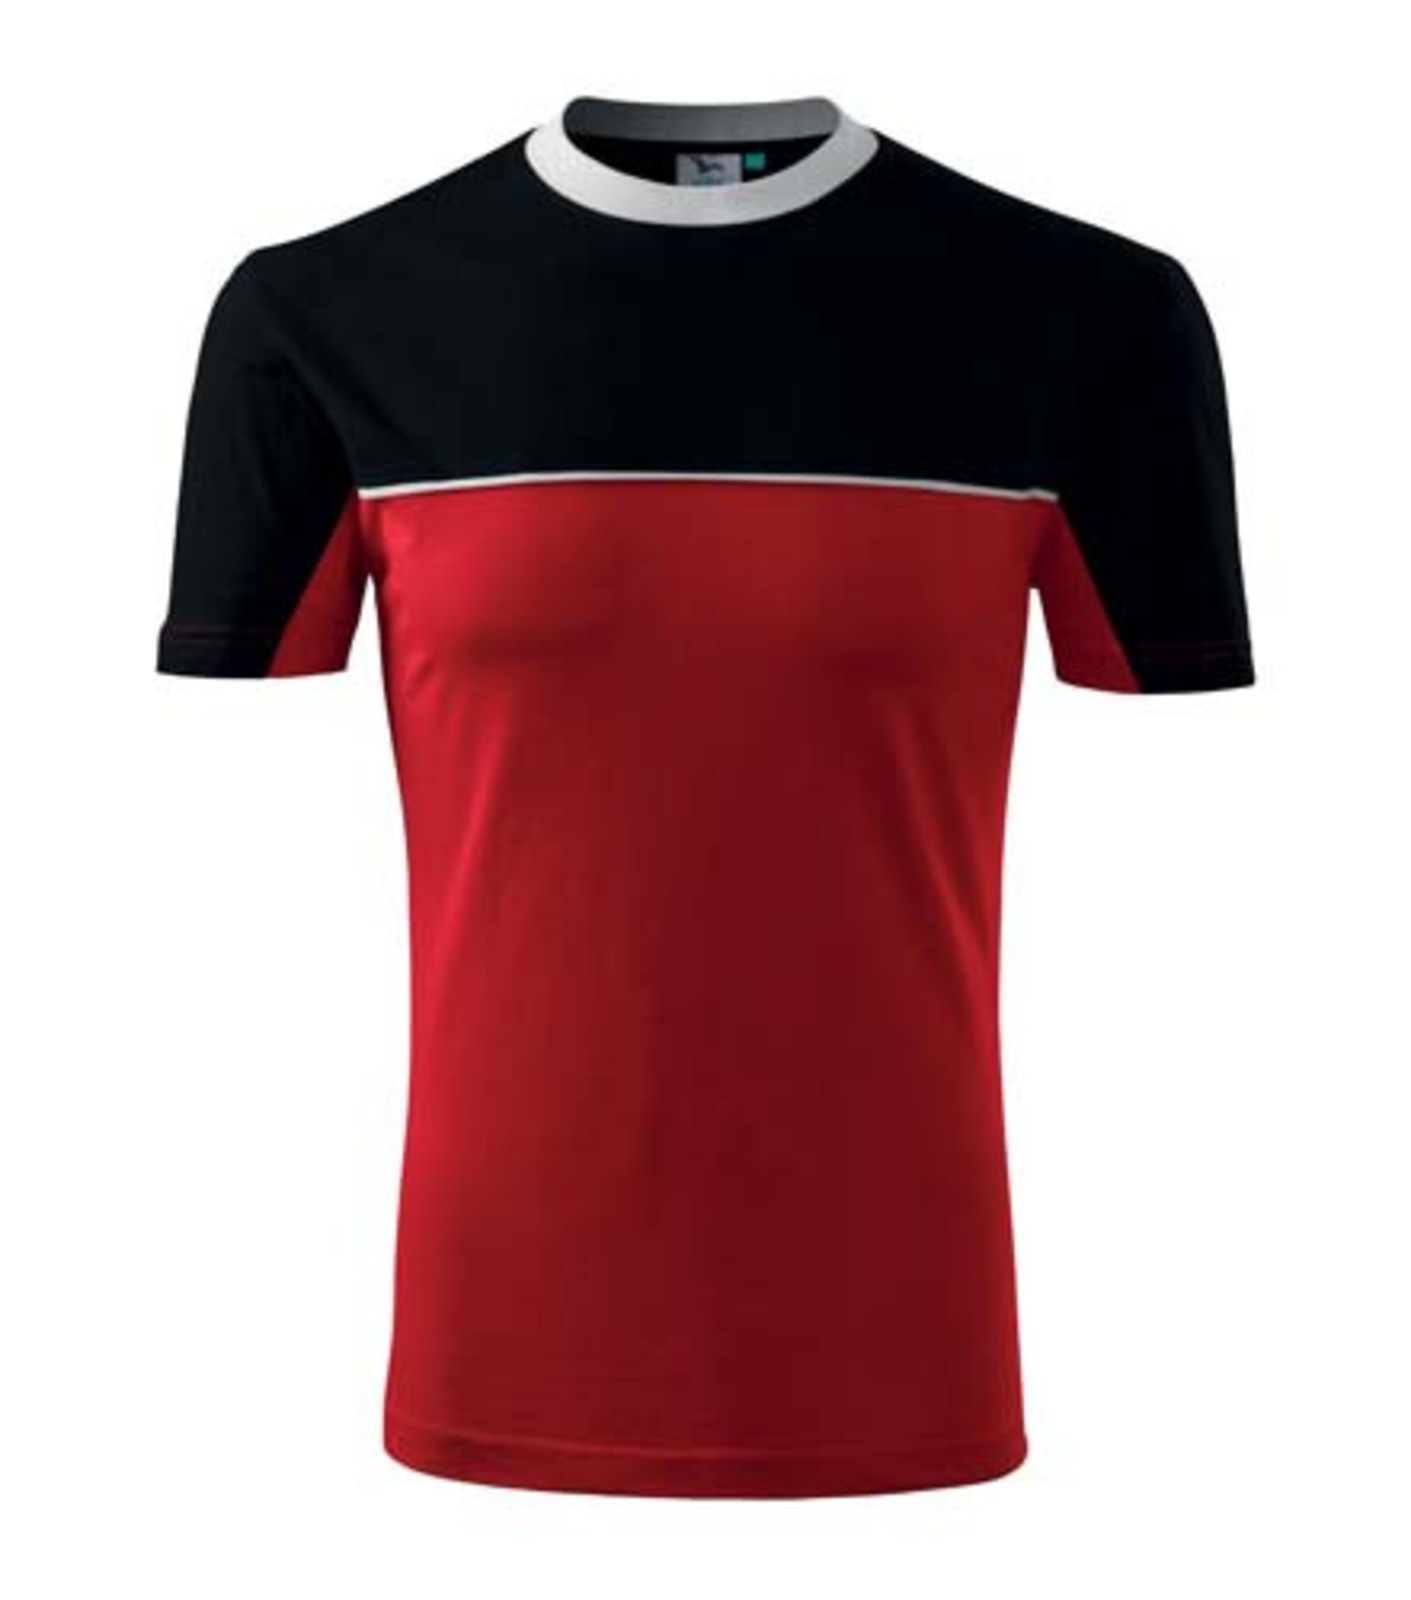 Unisex tričko Rimeck Colormix 109 - veľkosť: XL, farba: červená/čierna